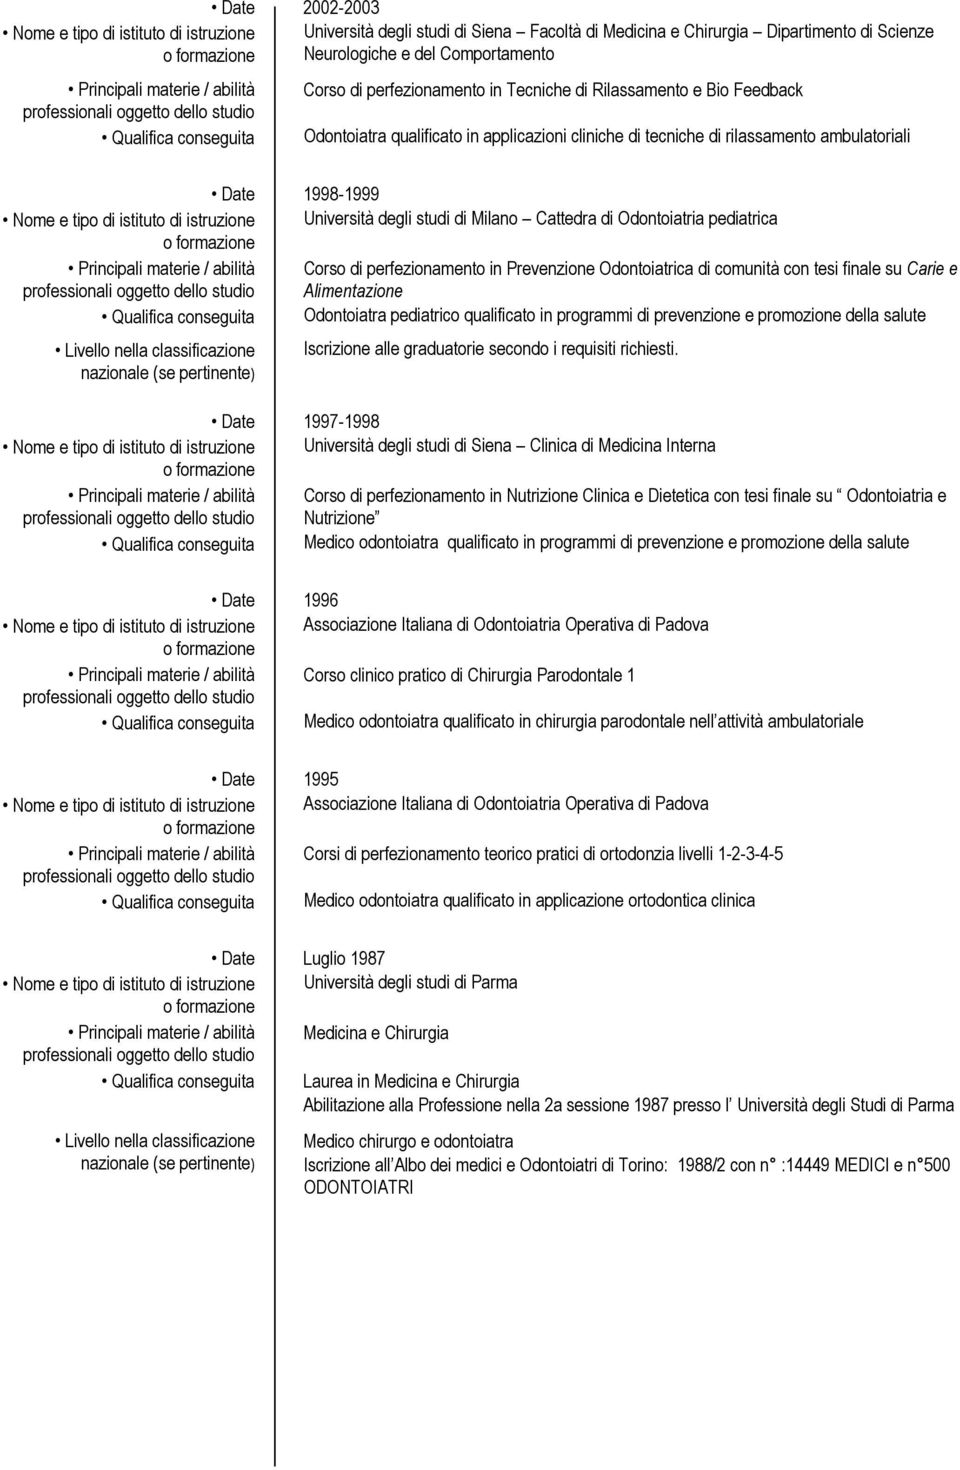 1998-1999 Nome e tipo di istituto di istruzione Università degli studi di Milano Cattedra di Odontoiatria pediatrica Principali materie / abilità Corso di perfezionamento in Prevenzione Odontoiatrica